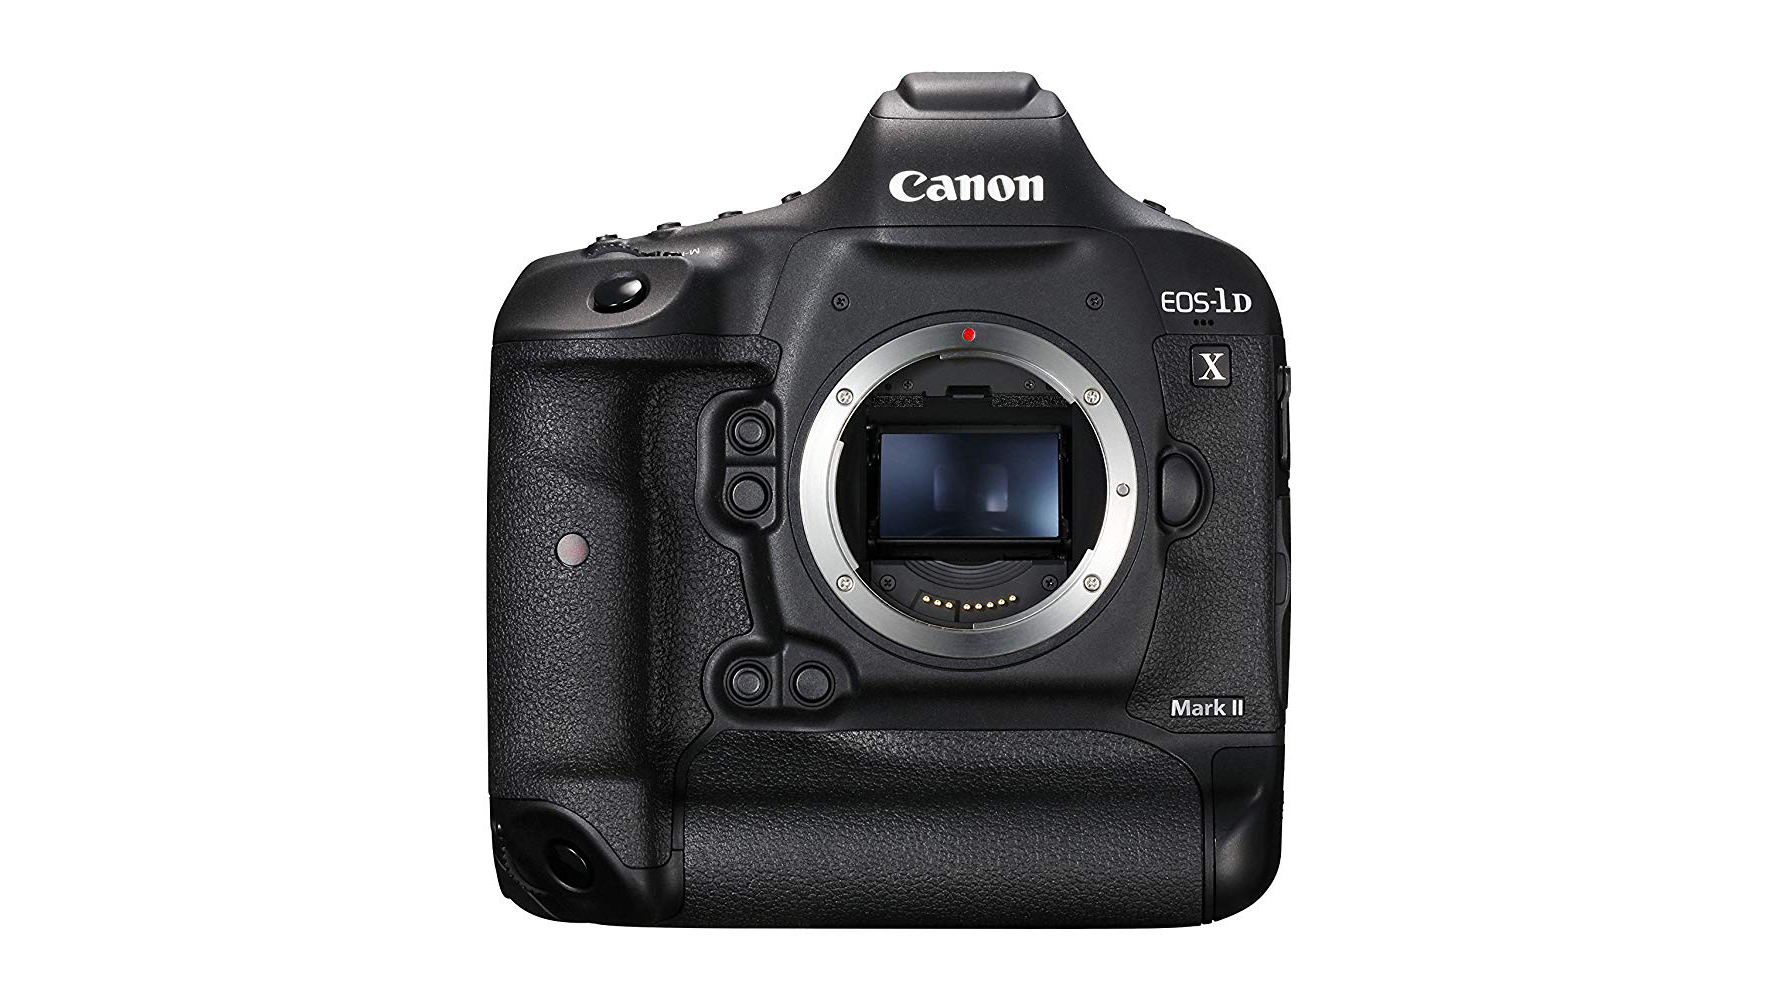 Granskning av Canon EOS-1D X Mark II: Definition av styrkor